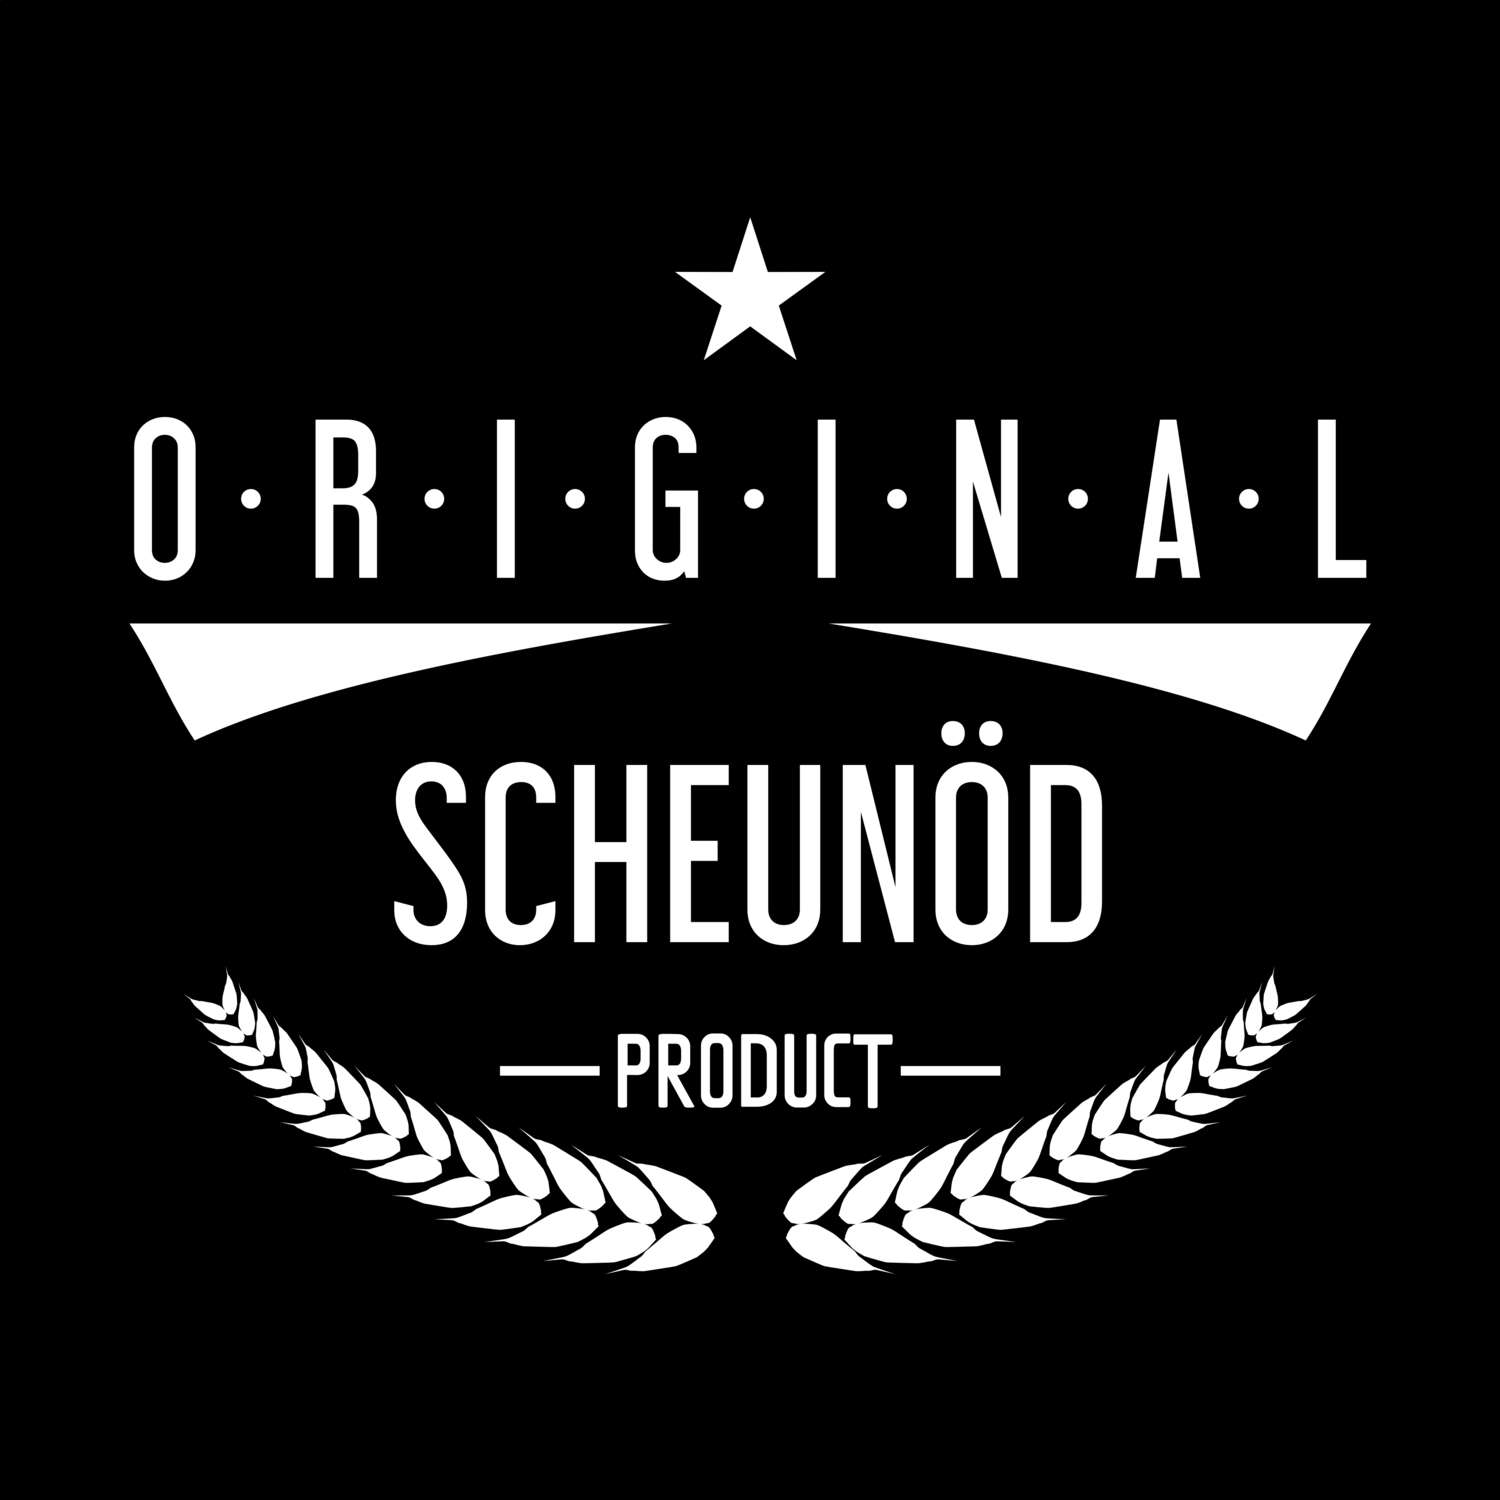 Scheunöd T-Shirt »Original Product«